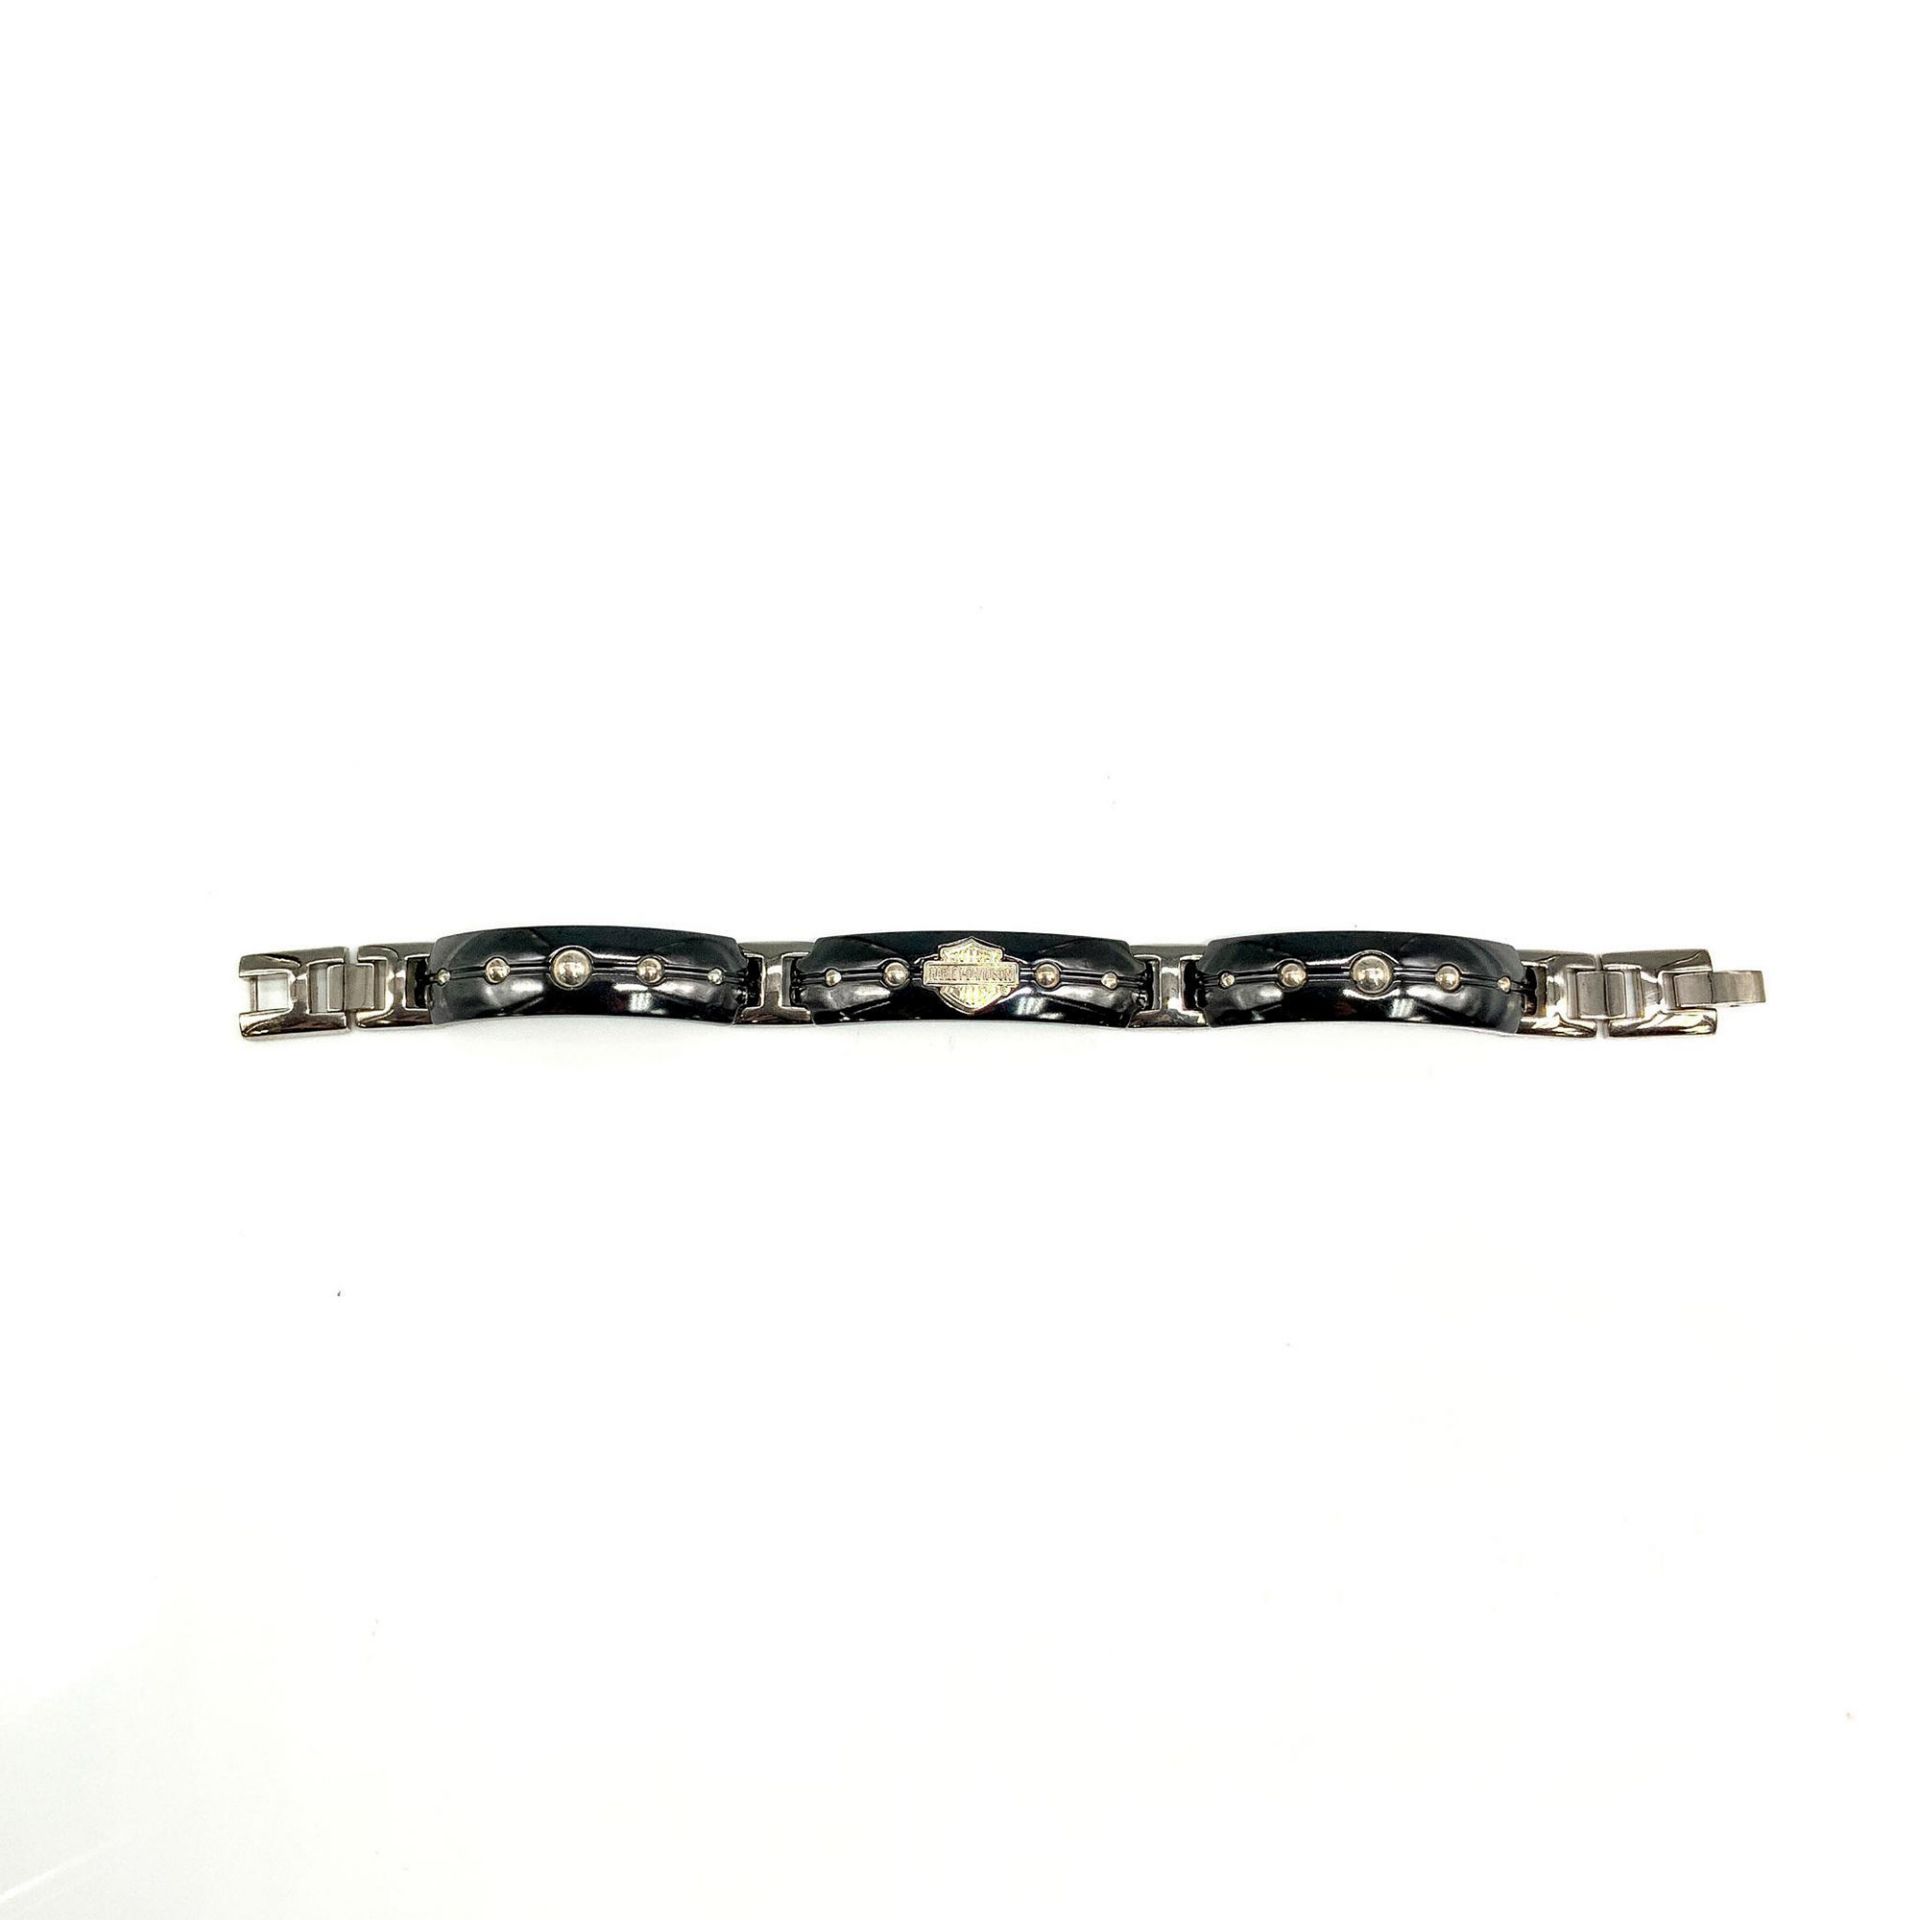 Harley Davidson Black and Silver Titanium Link Bracelet - Image 2 of 3